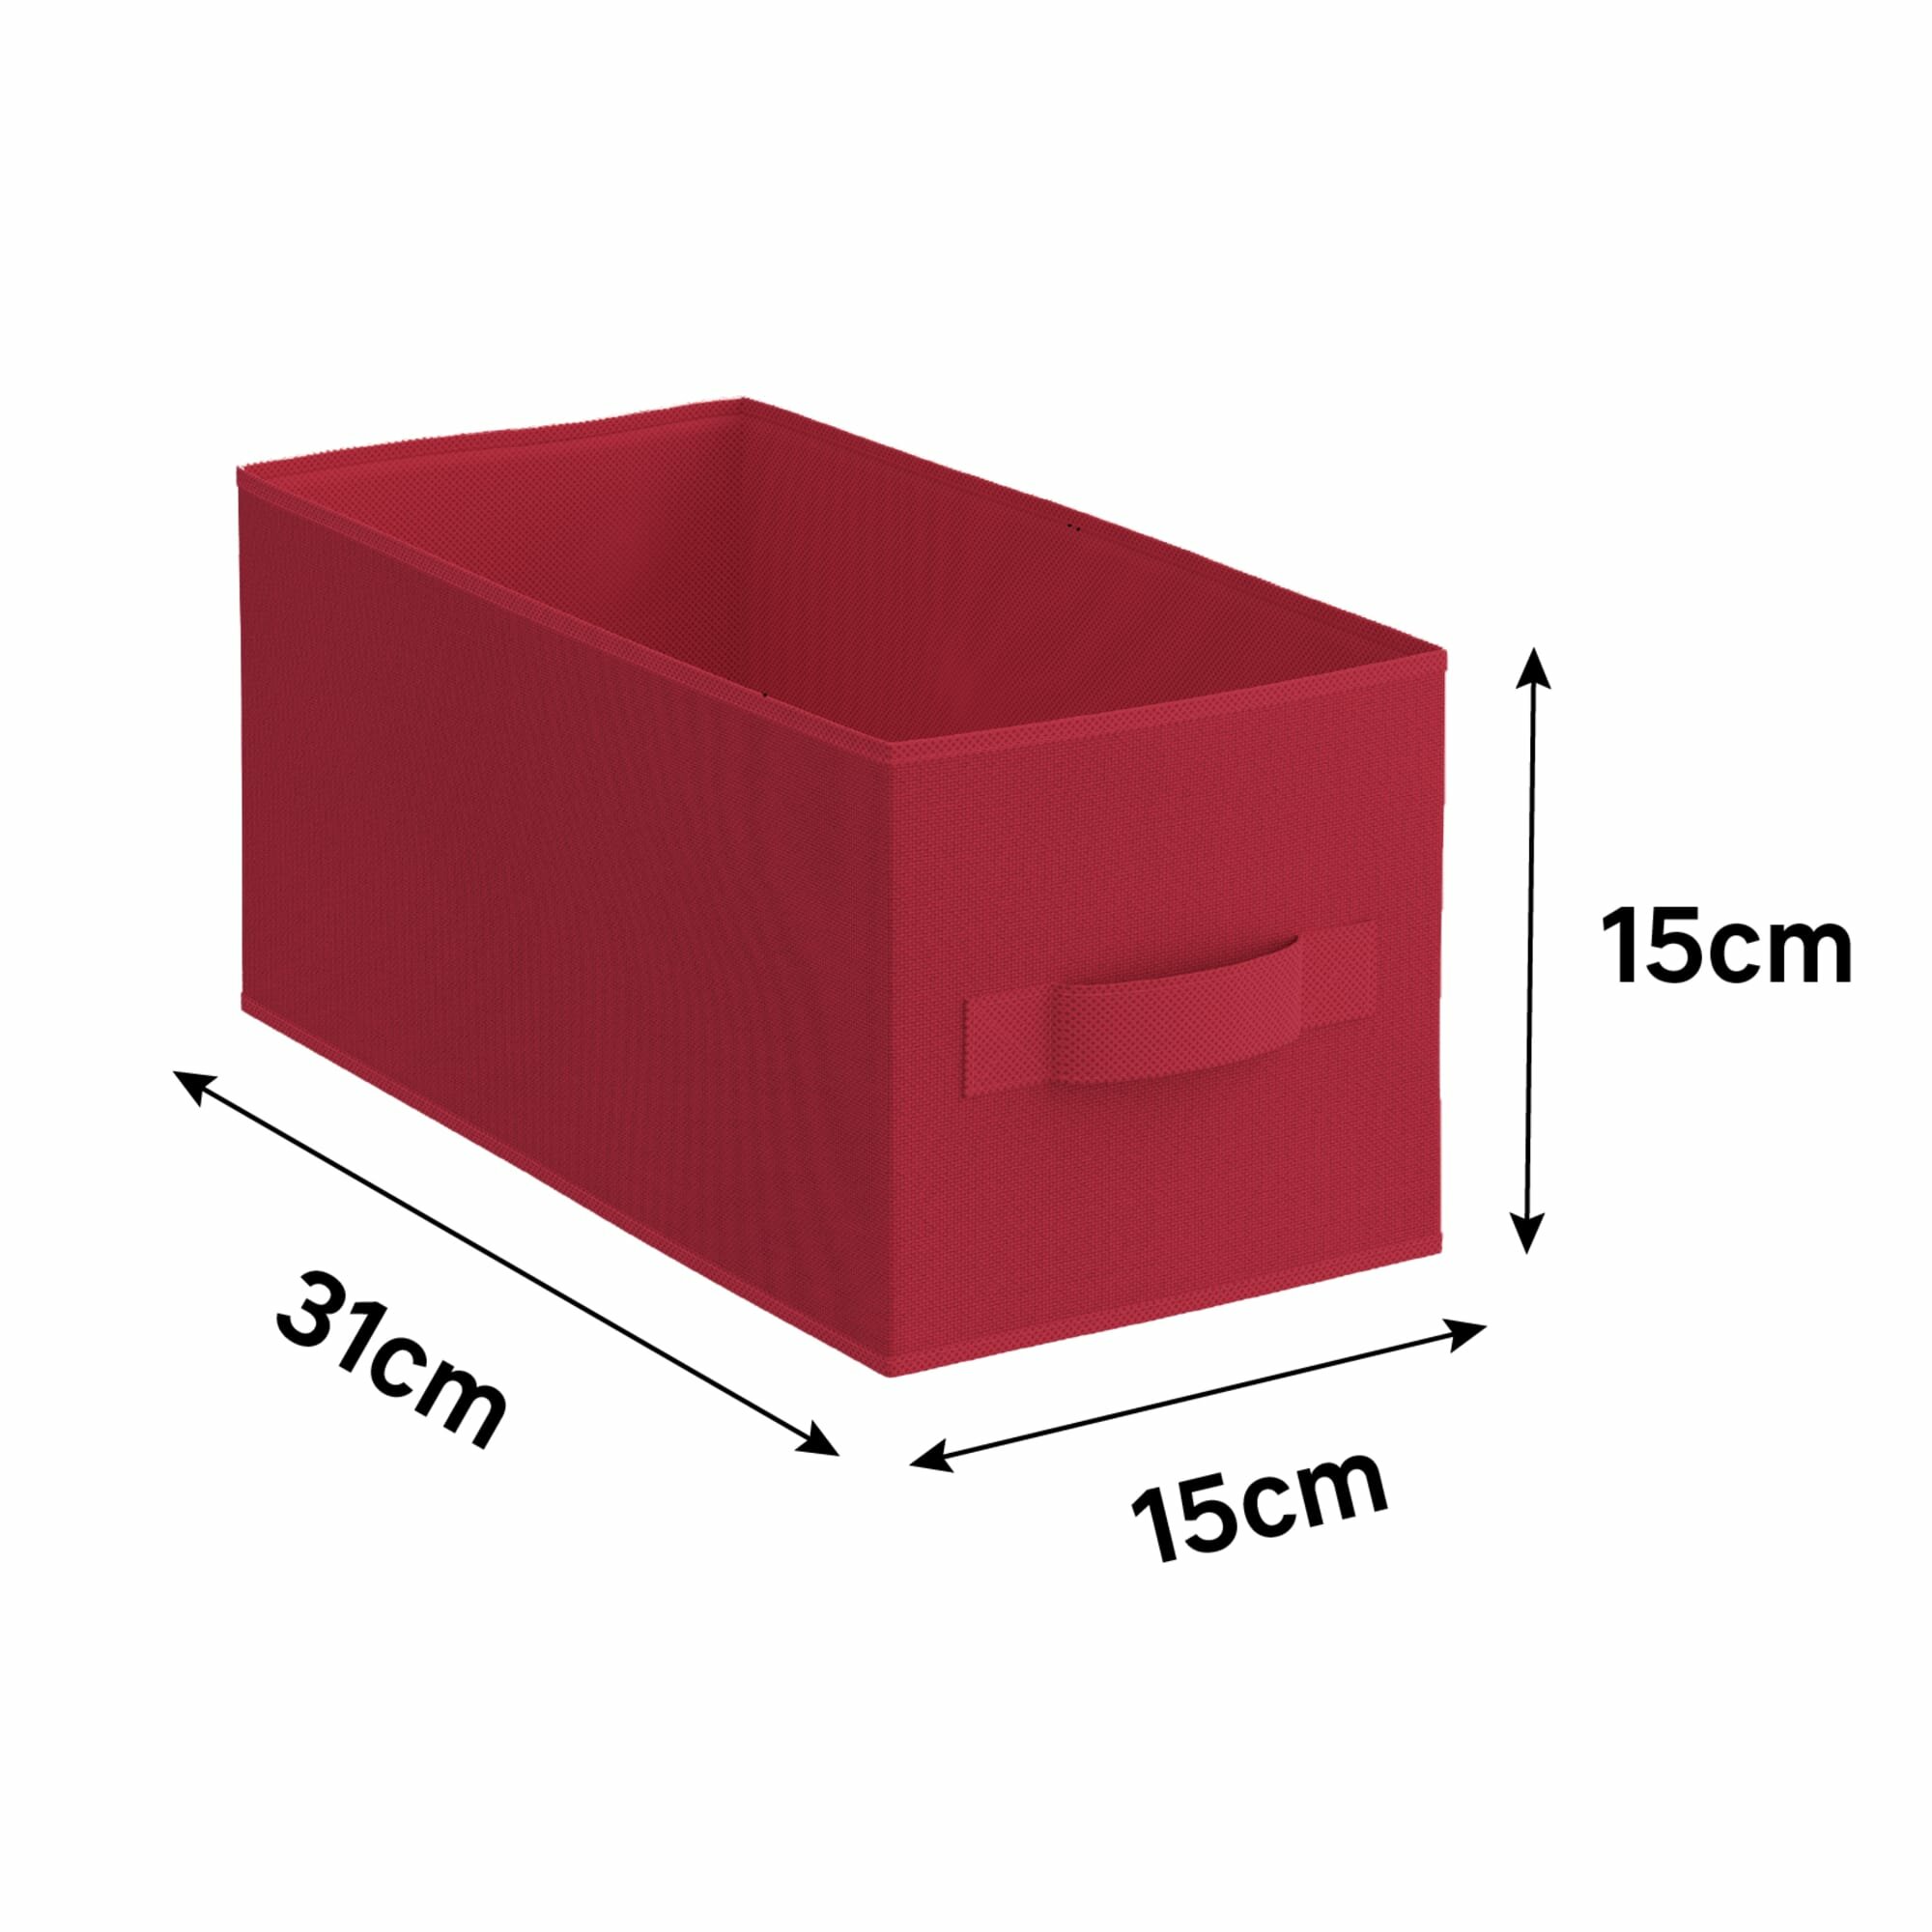 Короб Spaceo KUB 15x15x31 см 6.9 л полипропилен цвет красный